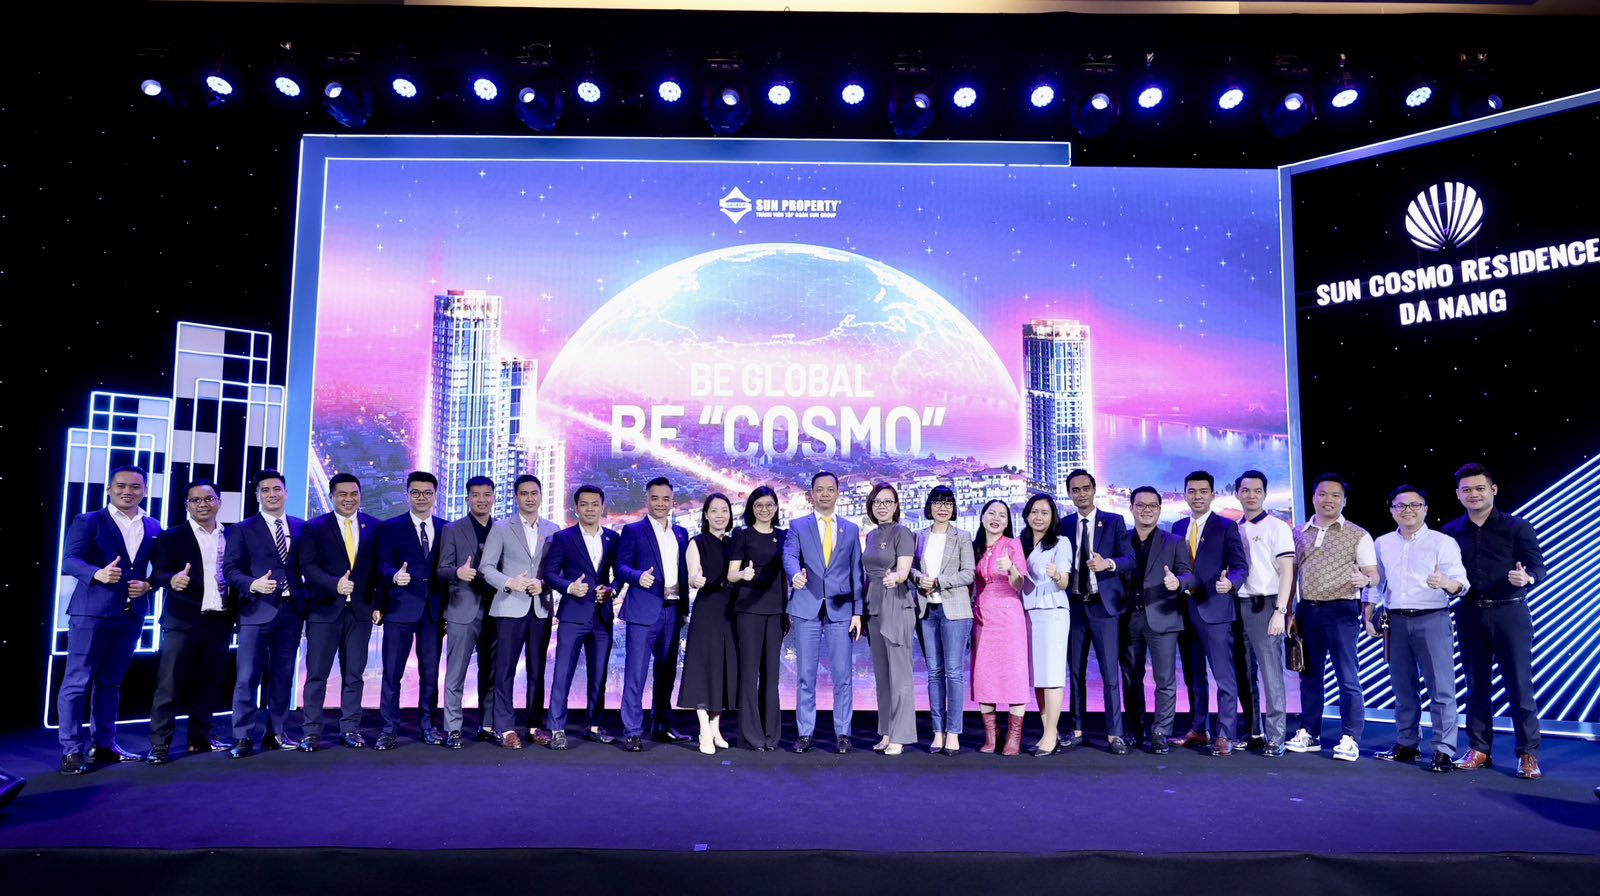 Chính thức ra mắt The Cosmo - Phân khu đầu tiên của Sun Cosmo Residence Da Nang 7